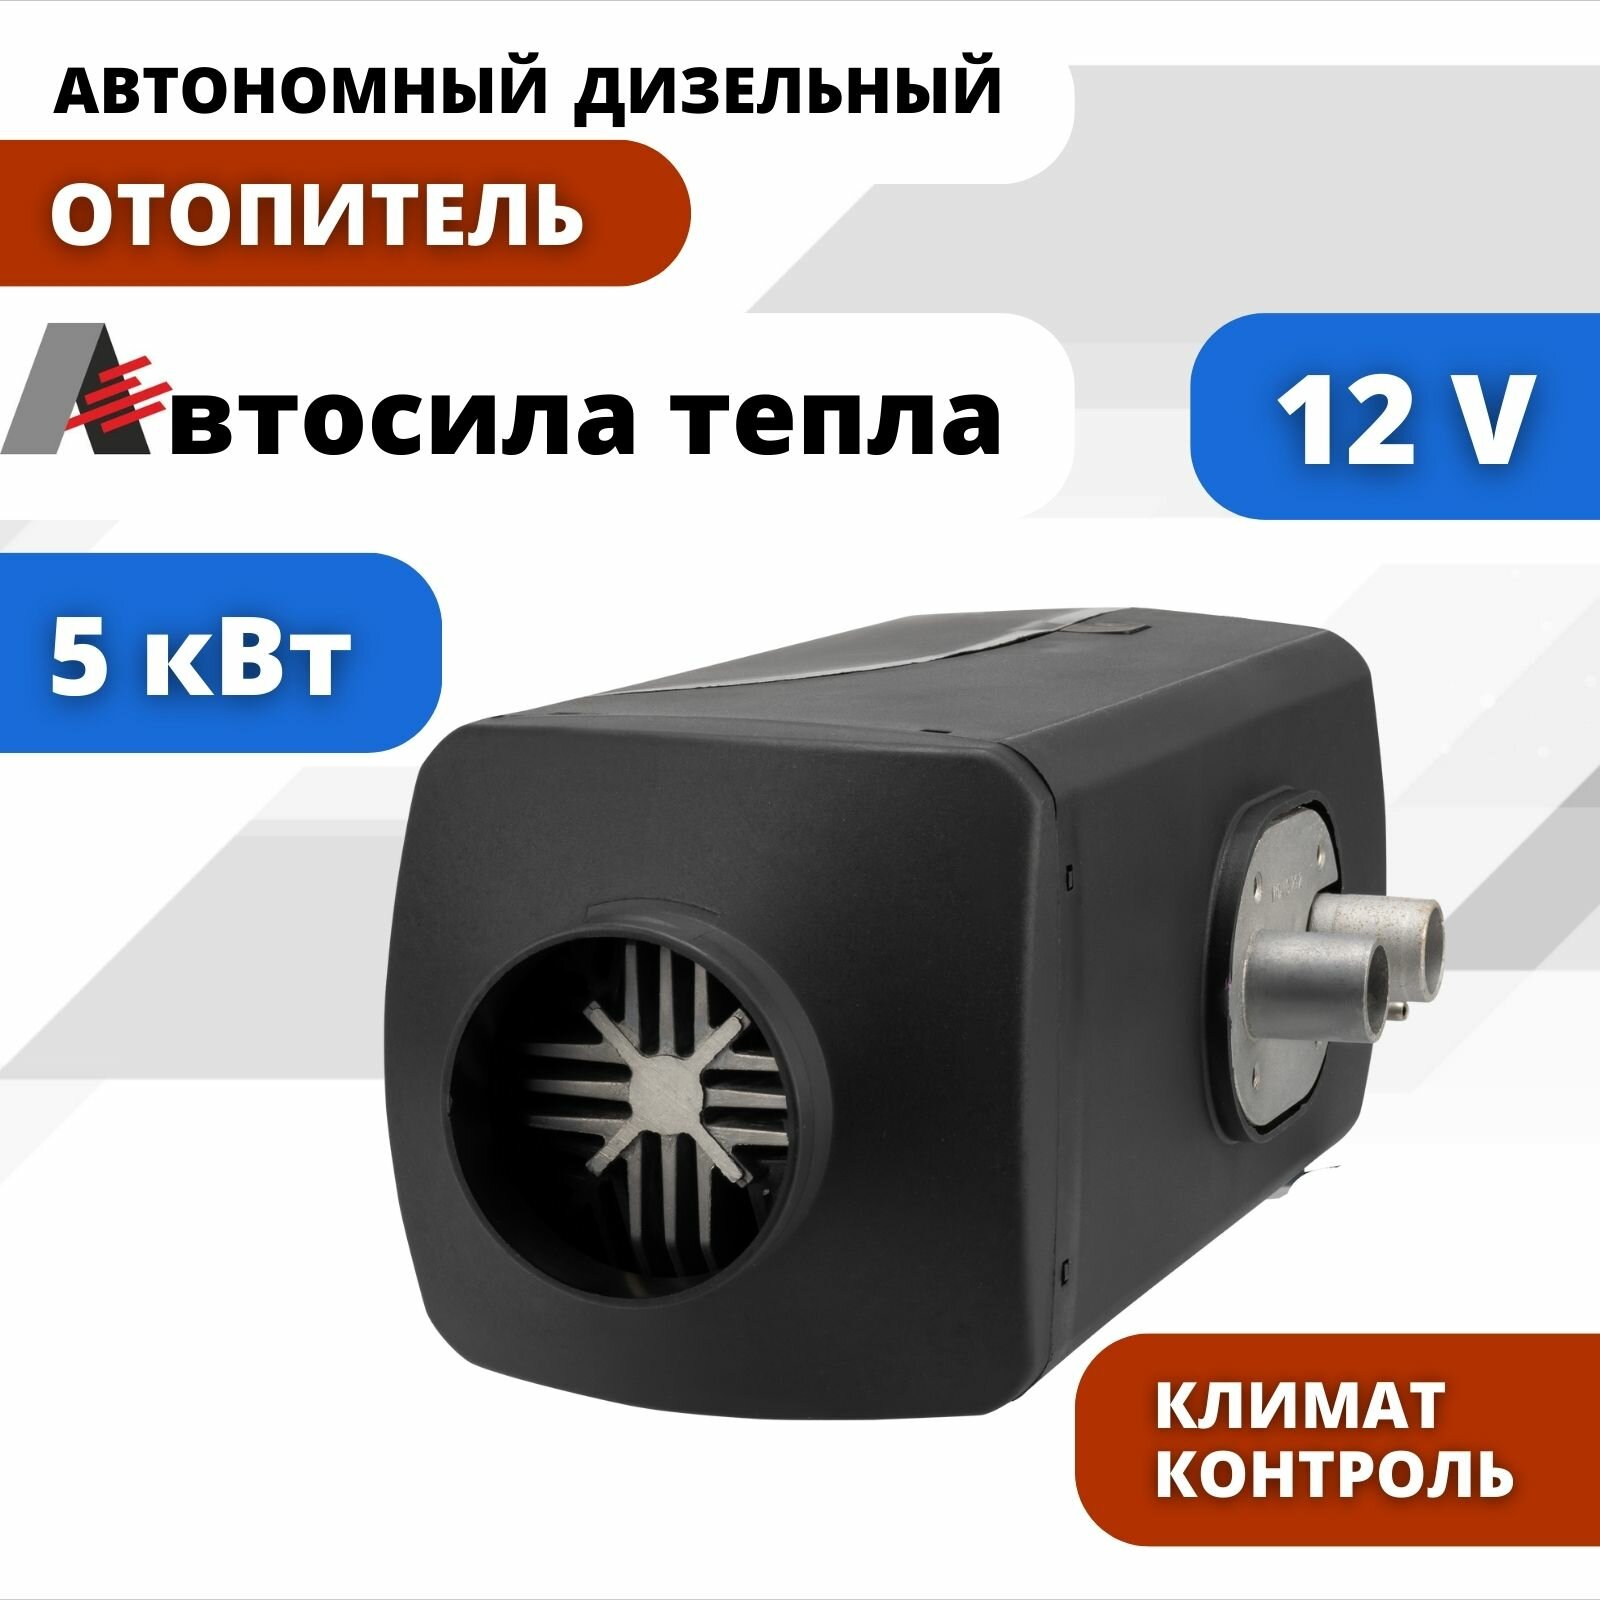 Автосила тепла 12v 5kw / 1 Сопло / Автономный дизельный отопитель переносной сухой фен